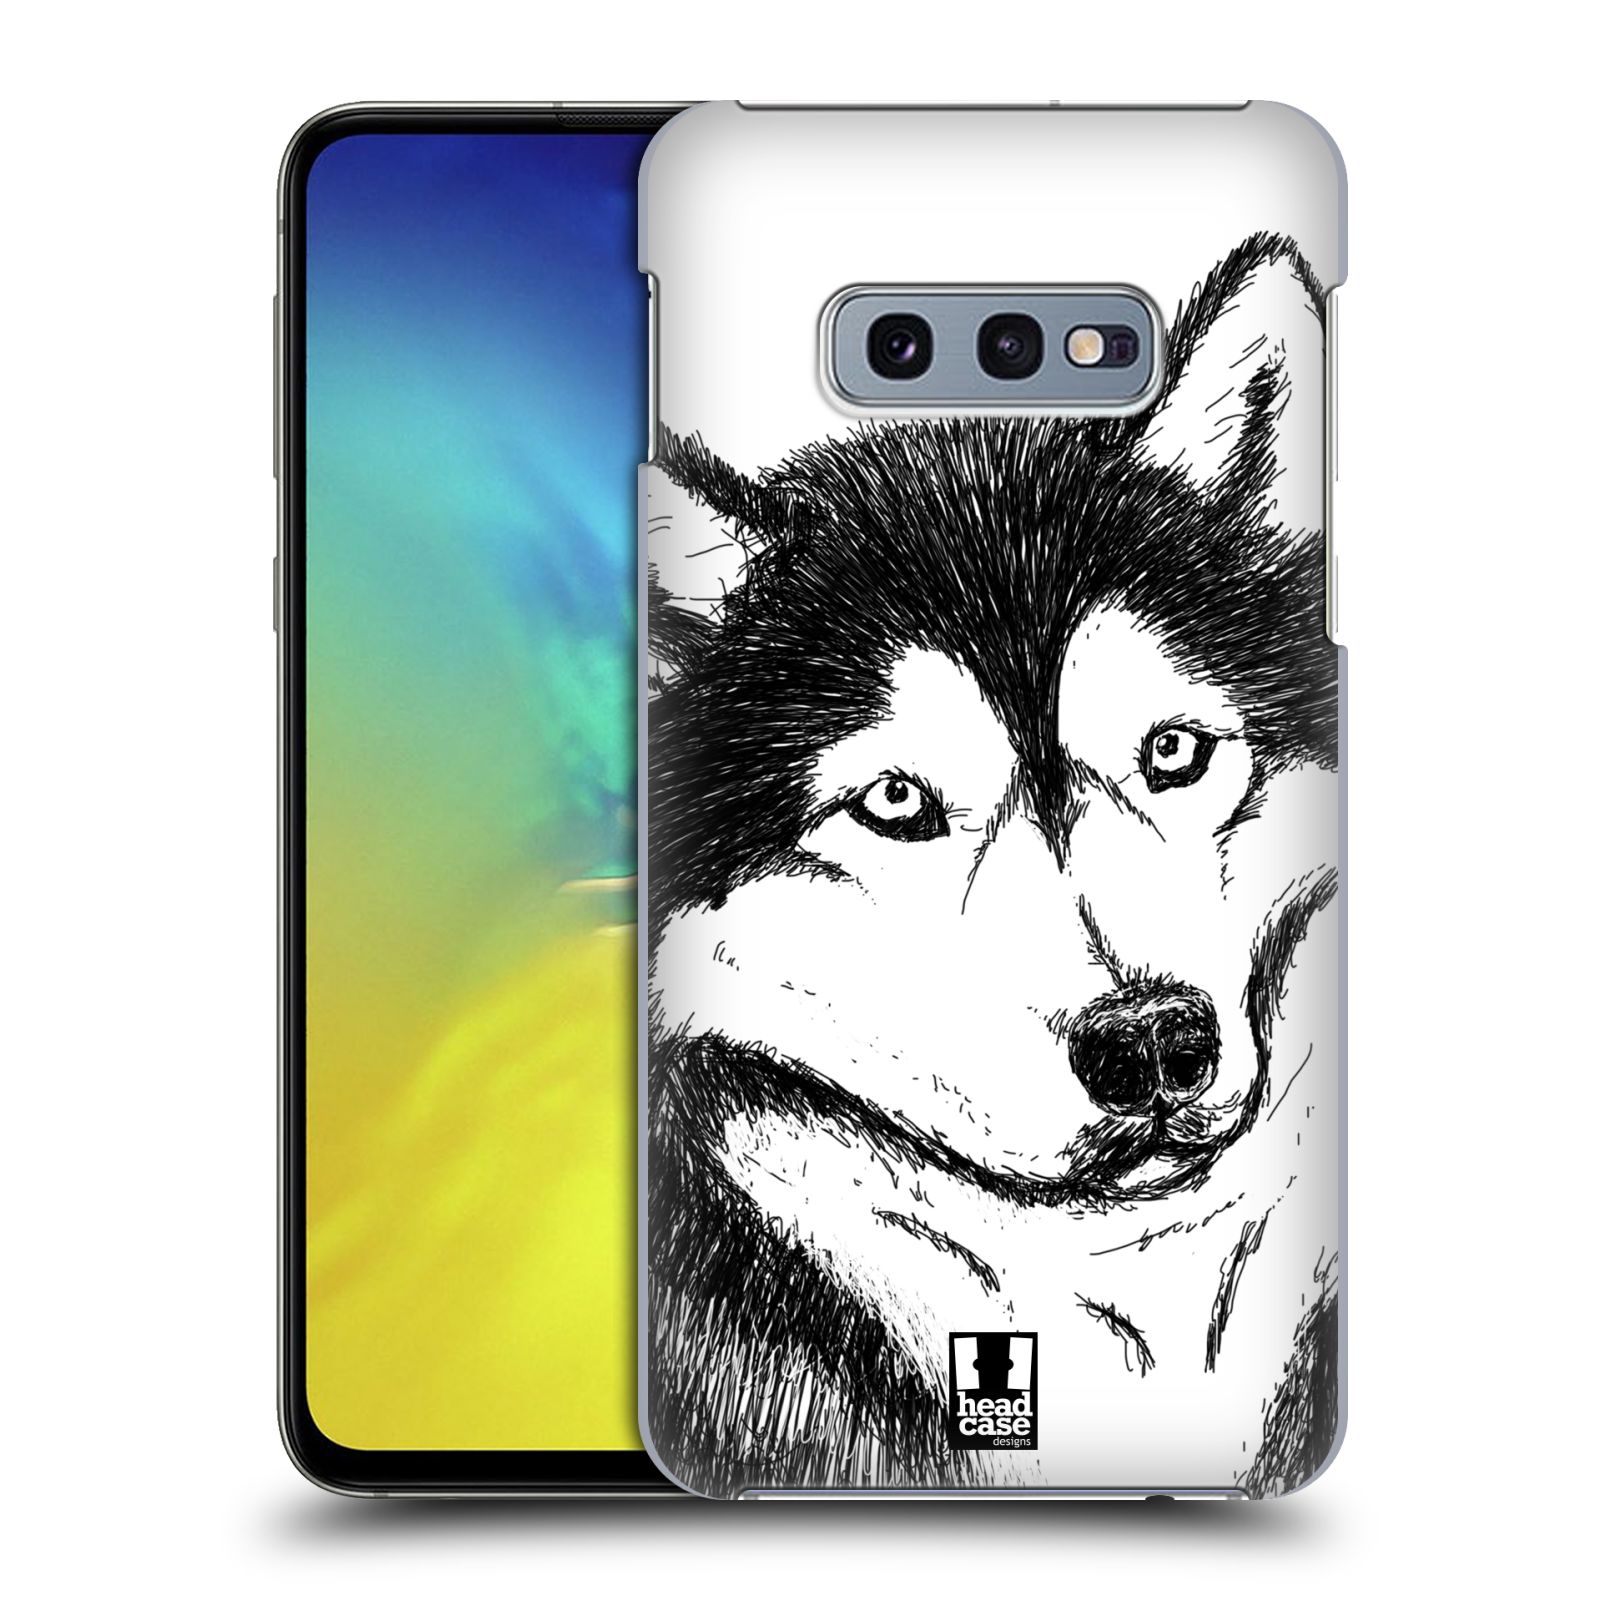 Pouzdro na mobil Samsung Galaxy S10e - HEAD CASE - vzor Kreslená zvířátka černá a bílá pes husky